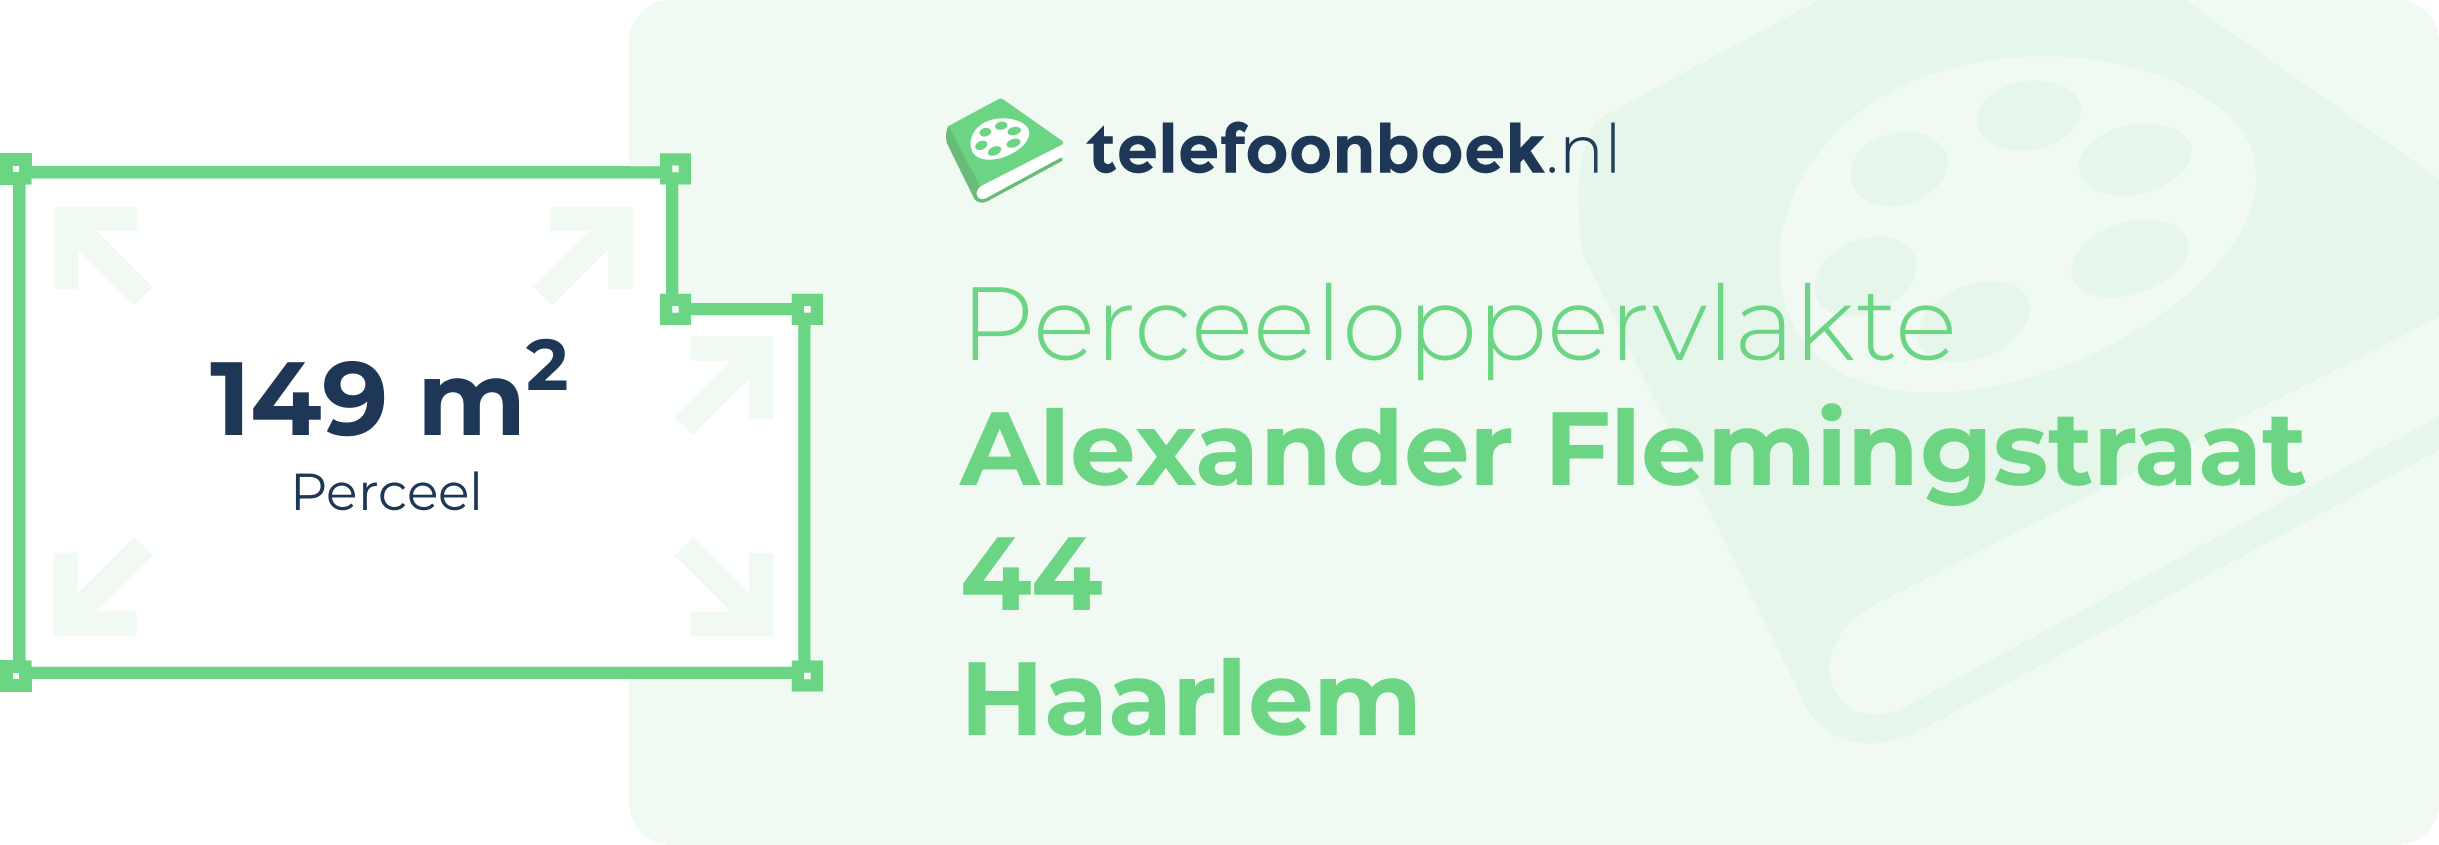 Perceeloppervlakte Alexander Flemingstraat 44 Haarlem